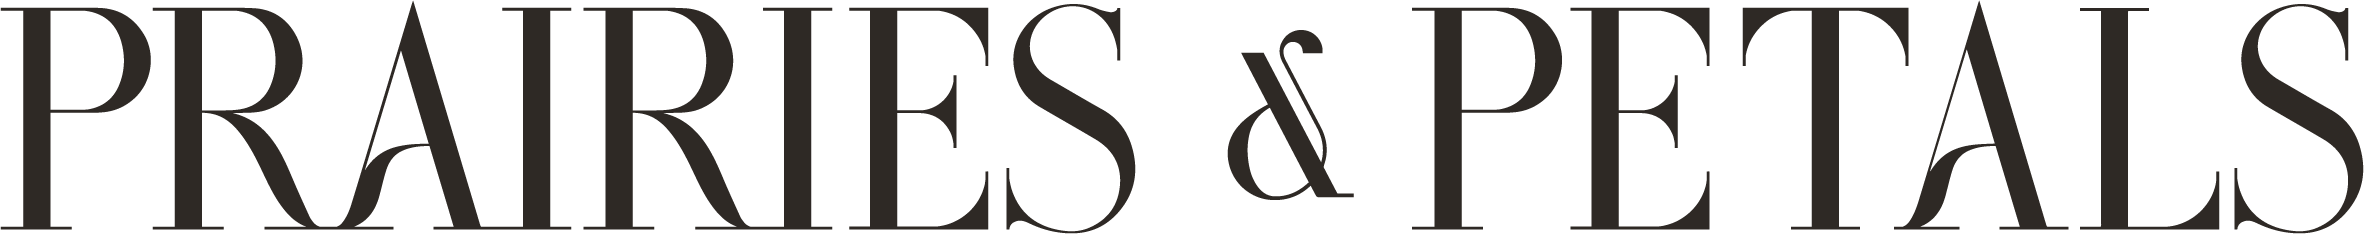 
												Prairies and Petals Logo